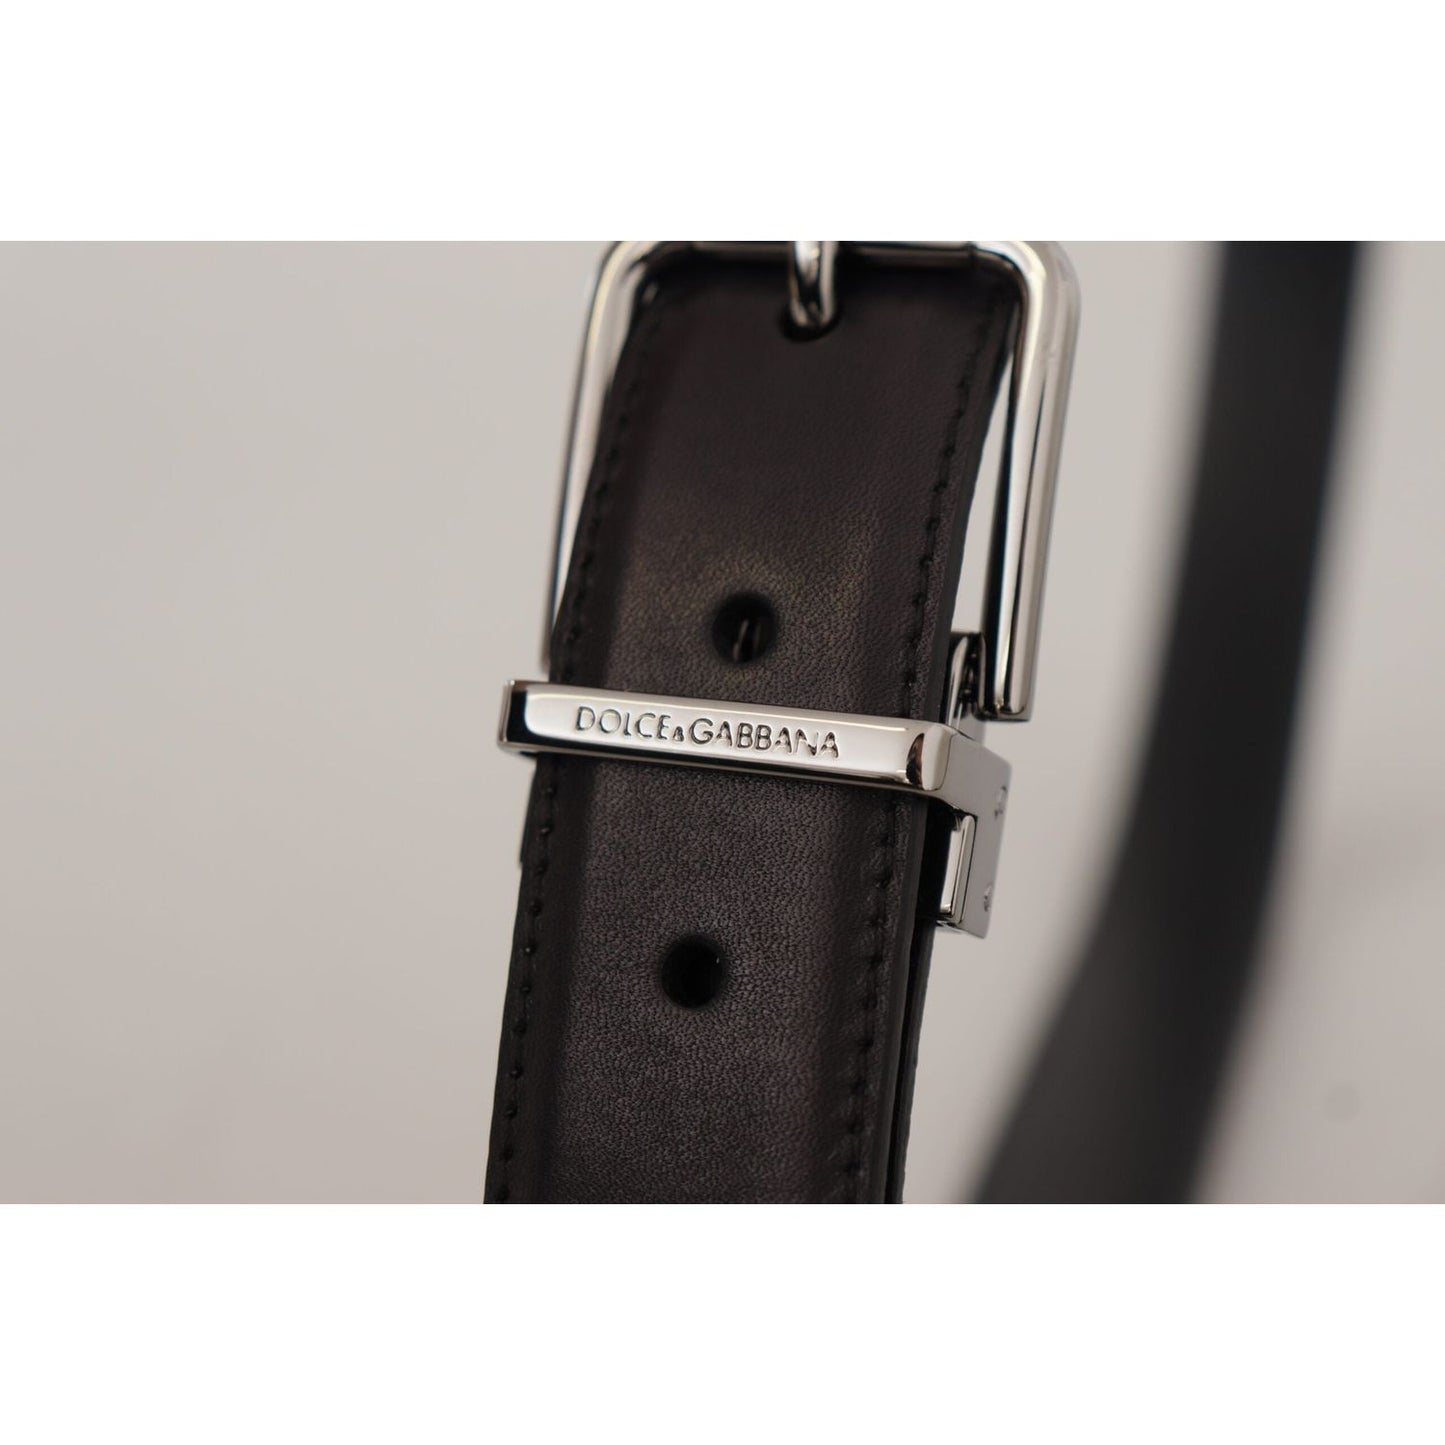 Dolce & Gabbana Elegant Black Leather Belt with Metal Buckle black-calf-leather-logo-engraved-metal-buckle-belt-8